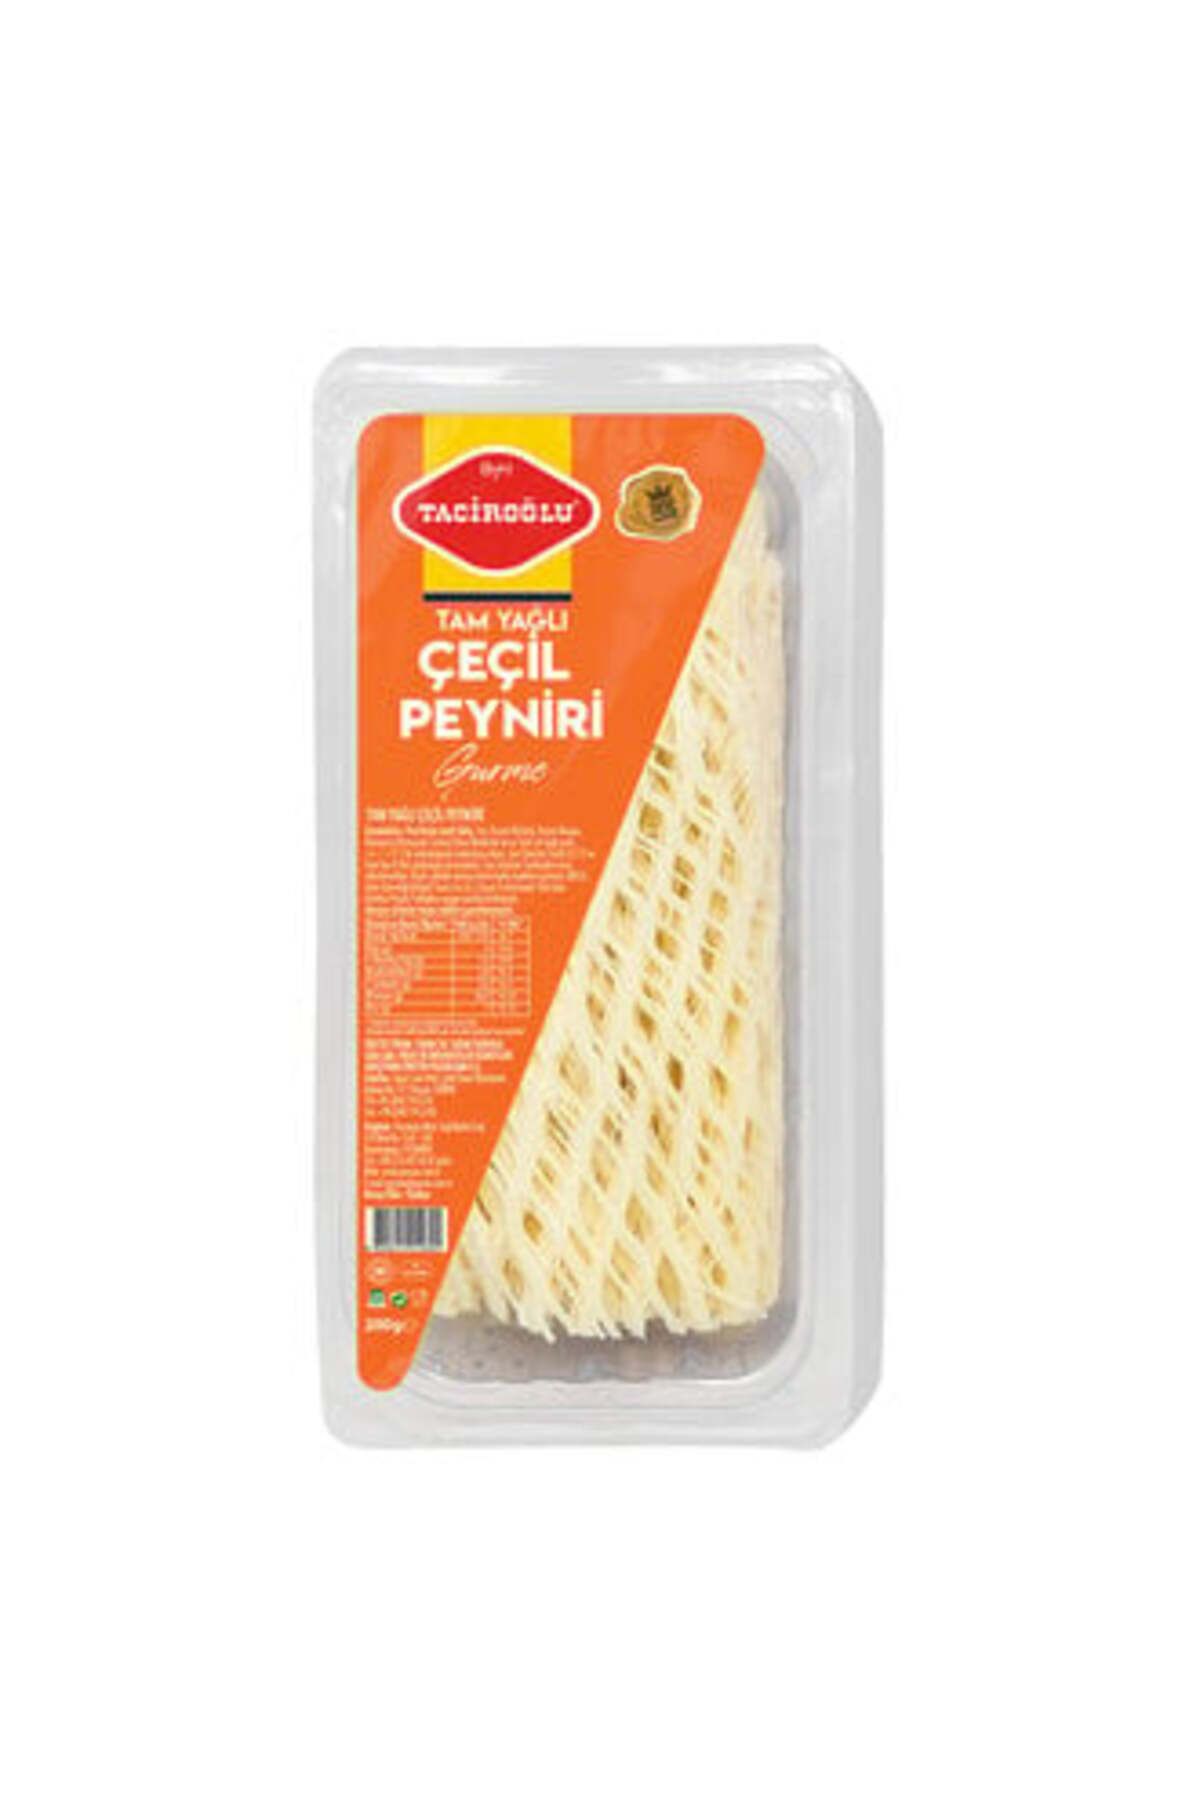 Taciroğlu ( MİNİ KAYMAK HEDİYE ) Taciroğlu Tam Yağlı Çeçil Peyniri 200 Gr